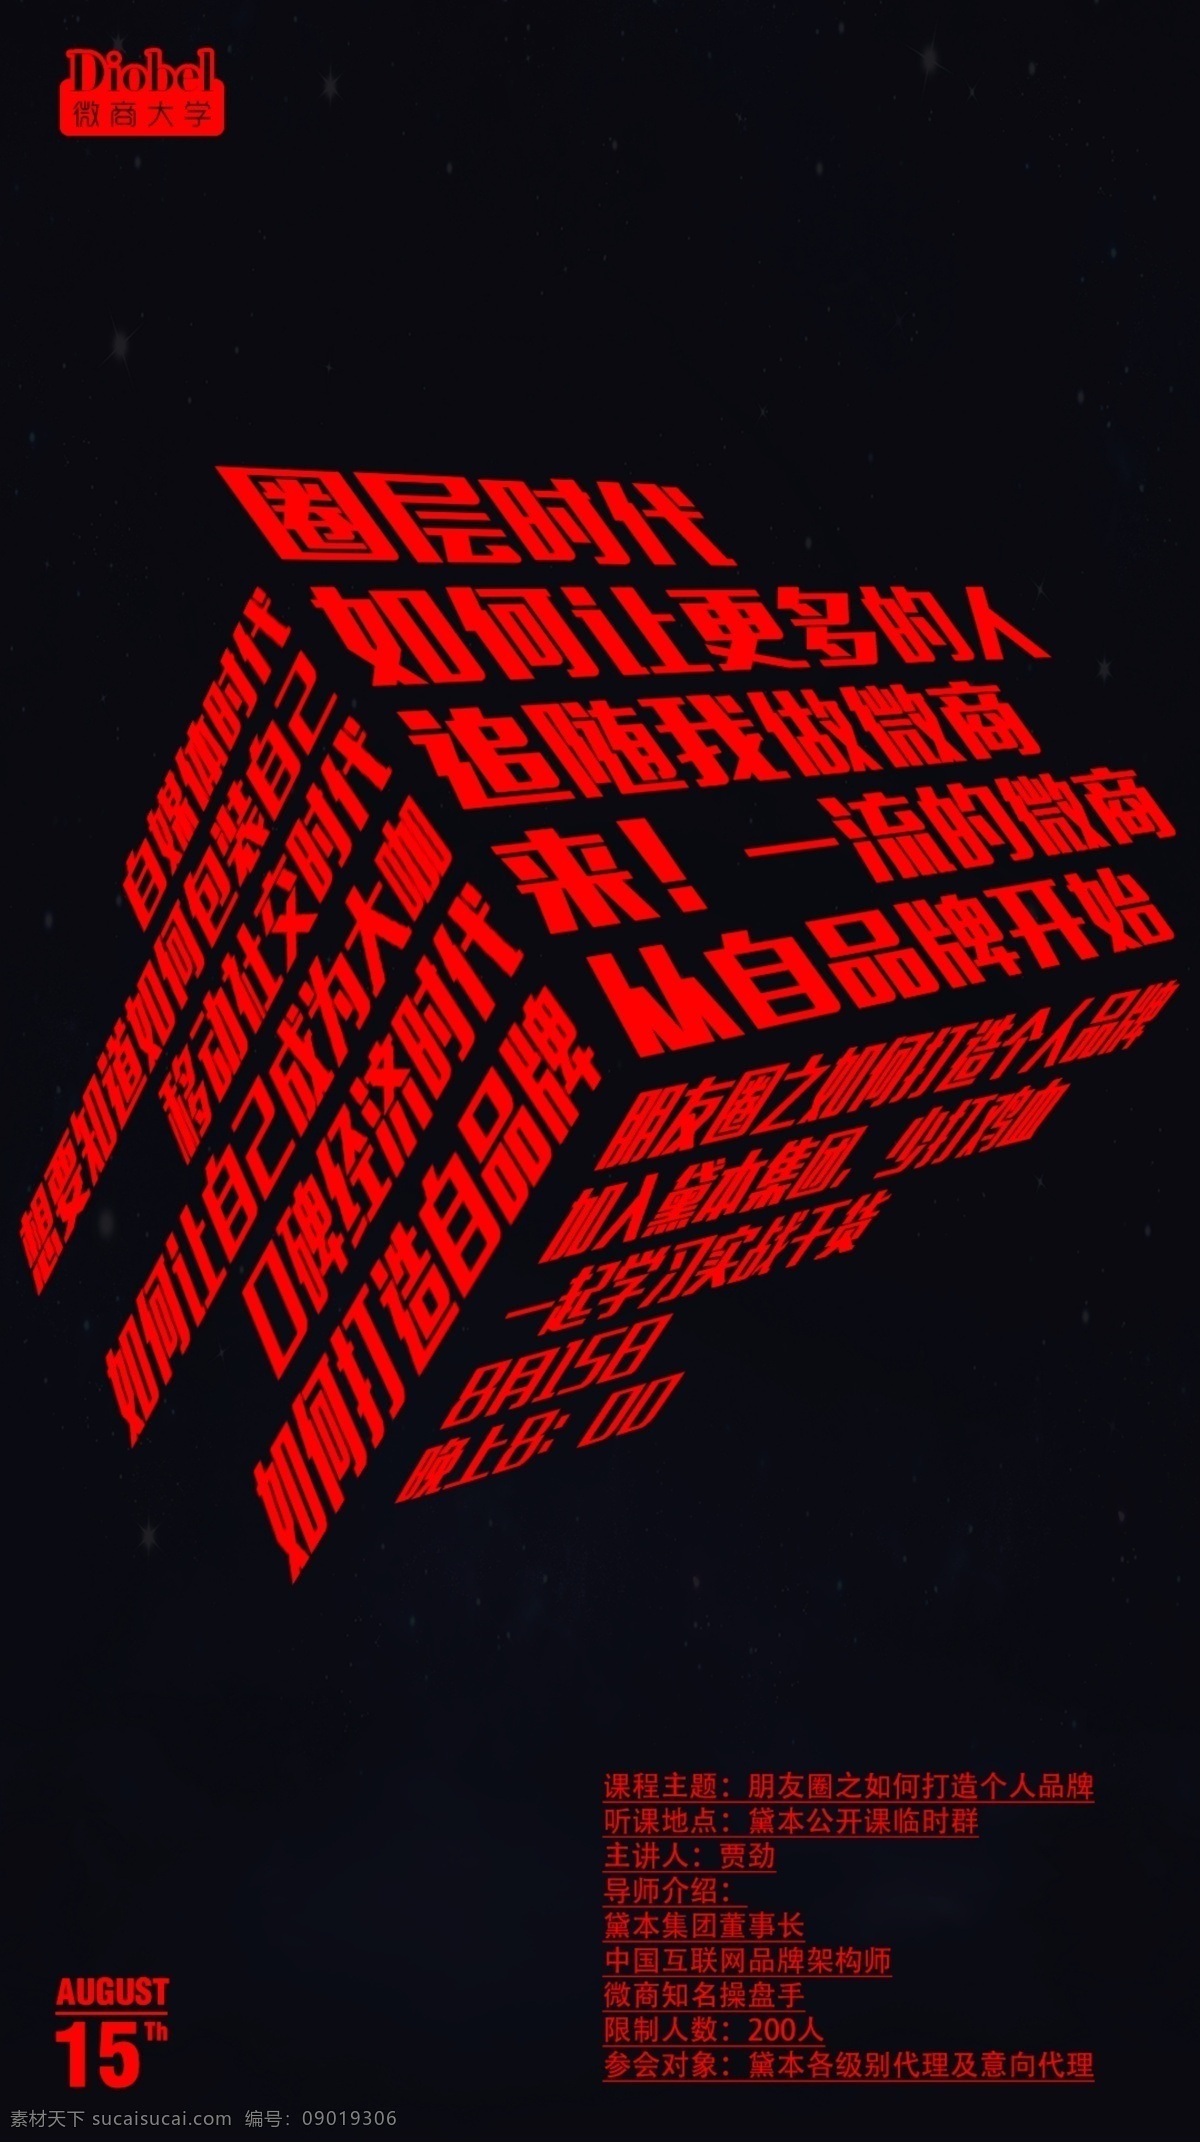 暗黑系 微商海报 红色 黑色 残忍 文字排版 矩形 背景